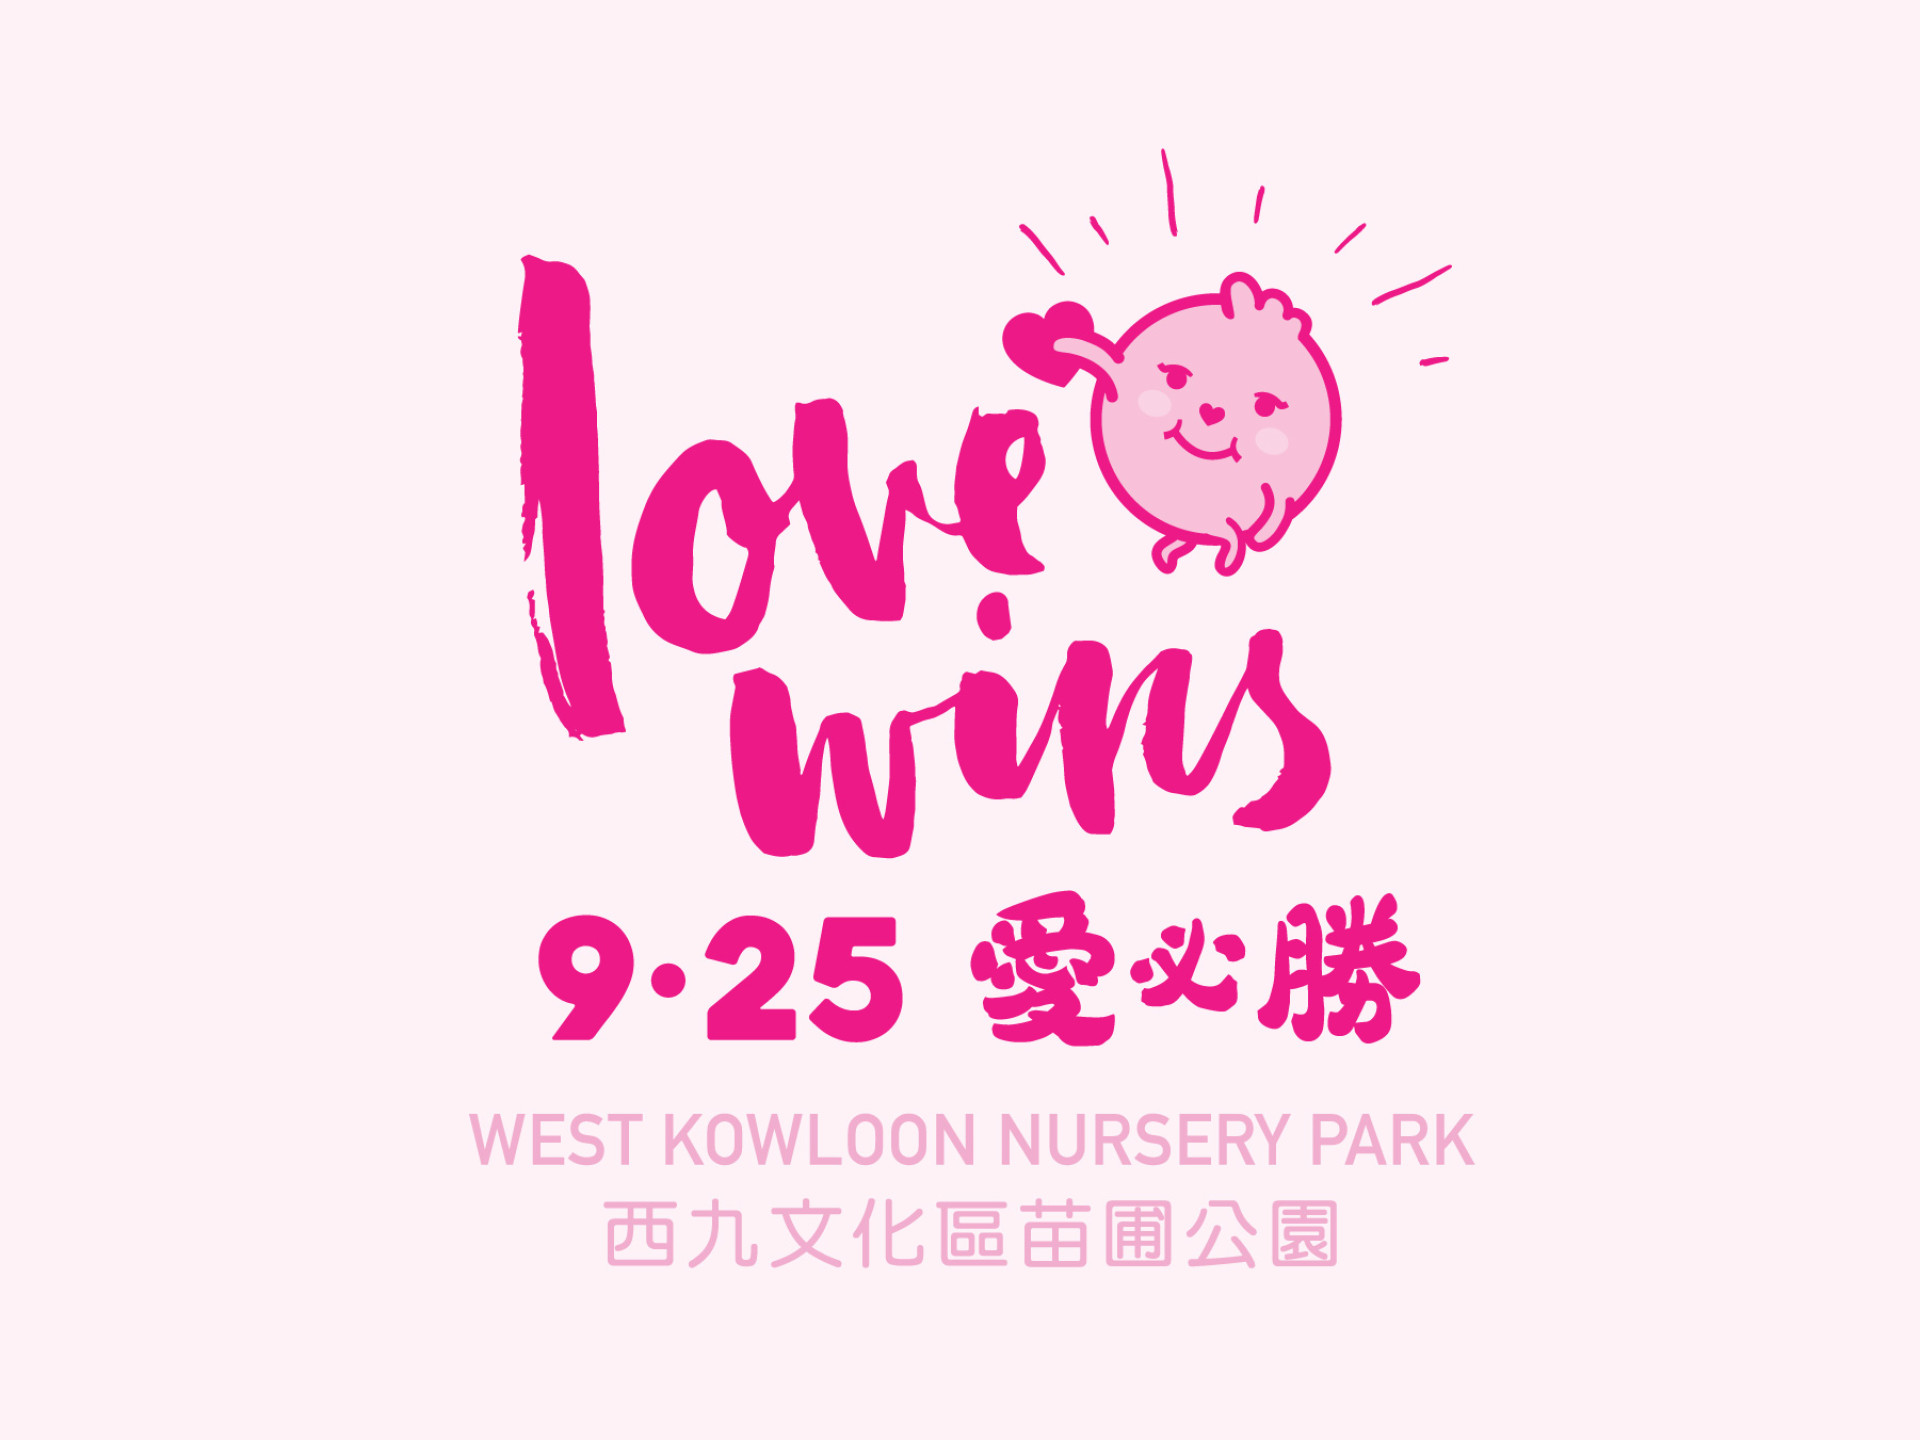 Pink Dot Hong Kong 2016 - Love Wins Key Visual Design